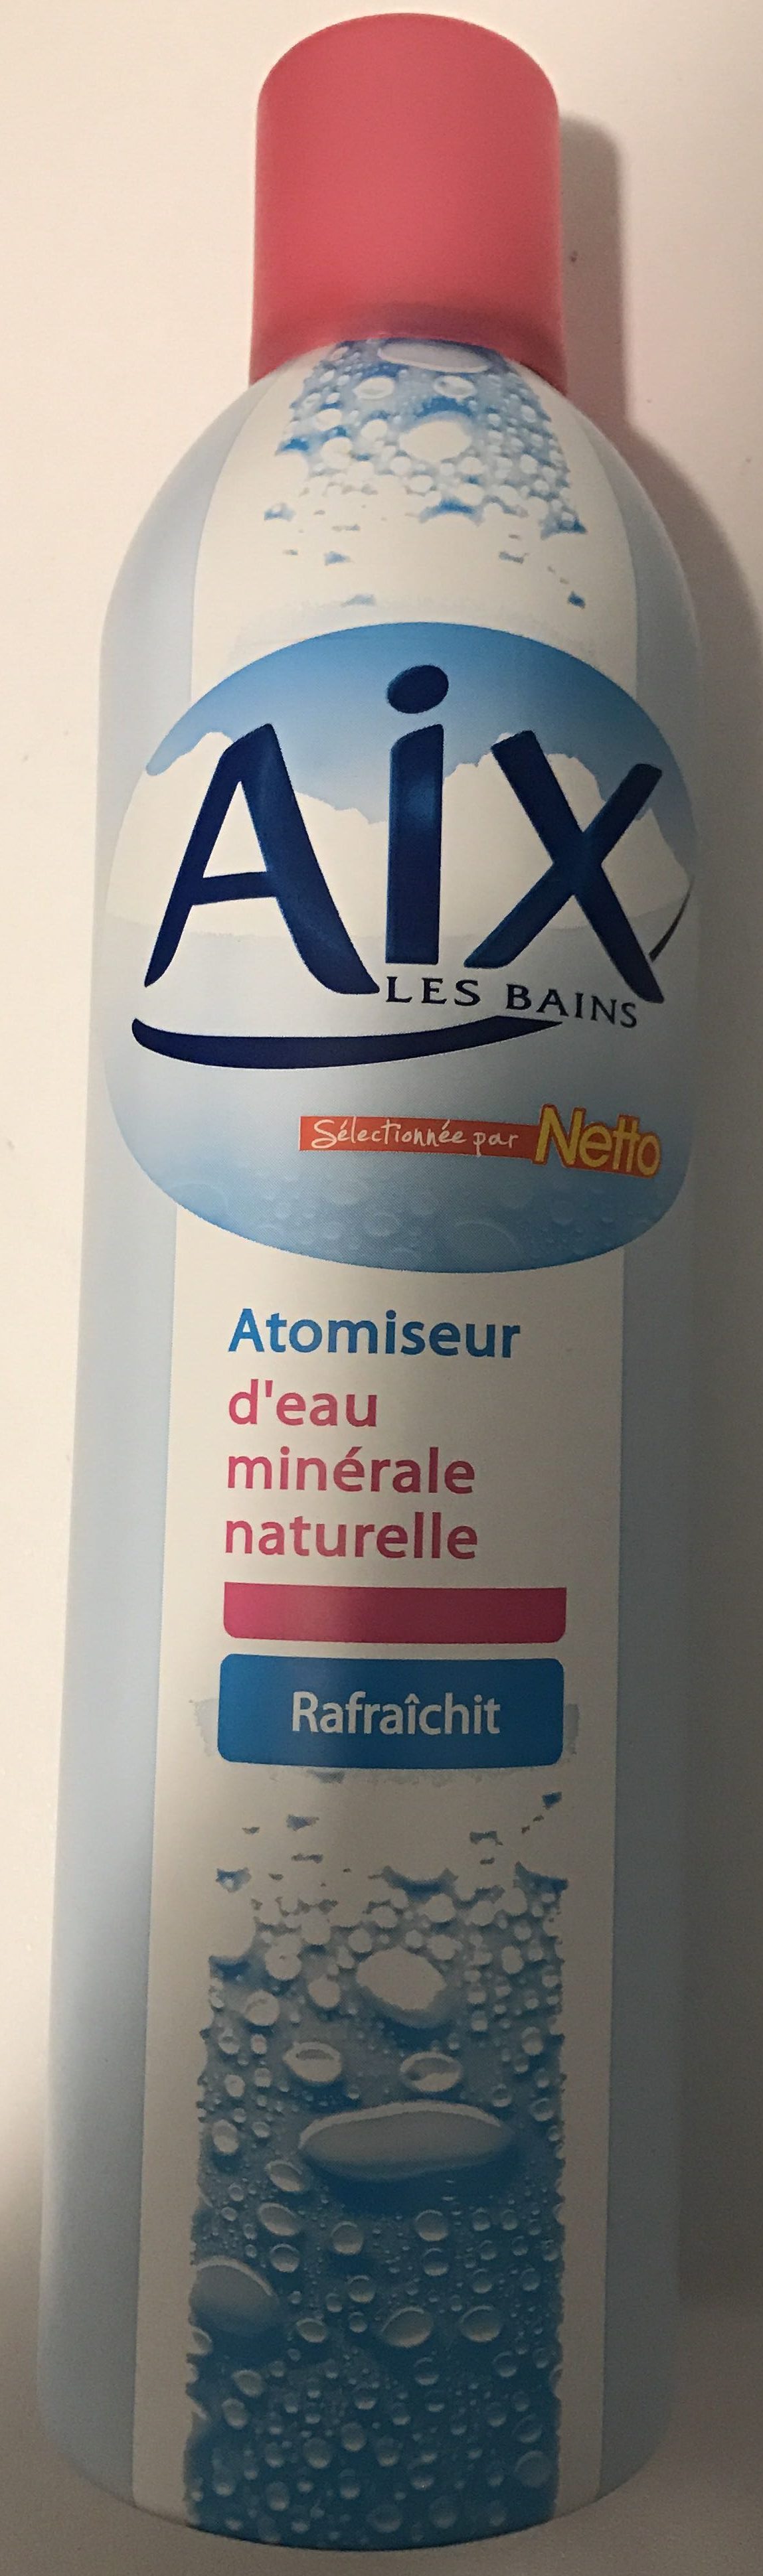 Atomiseur d'eau minérale naturelle - Produkto - fr